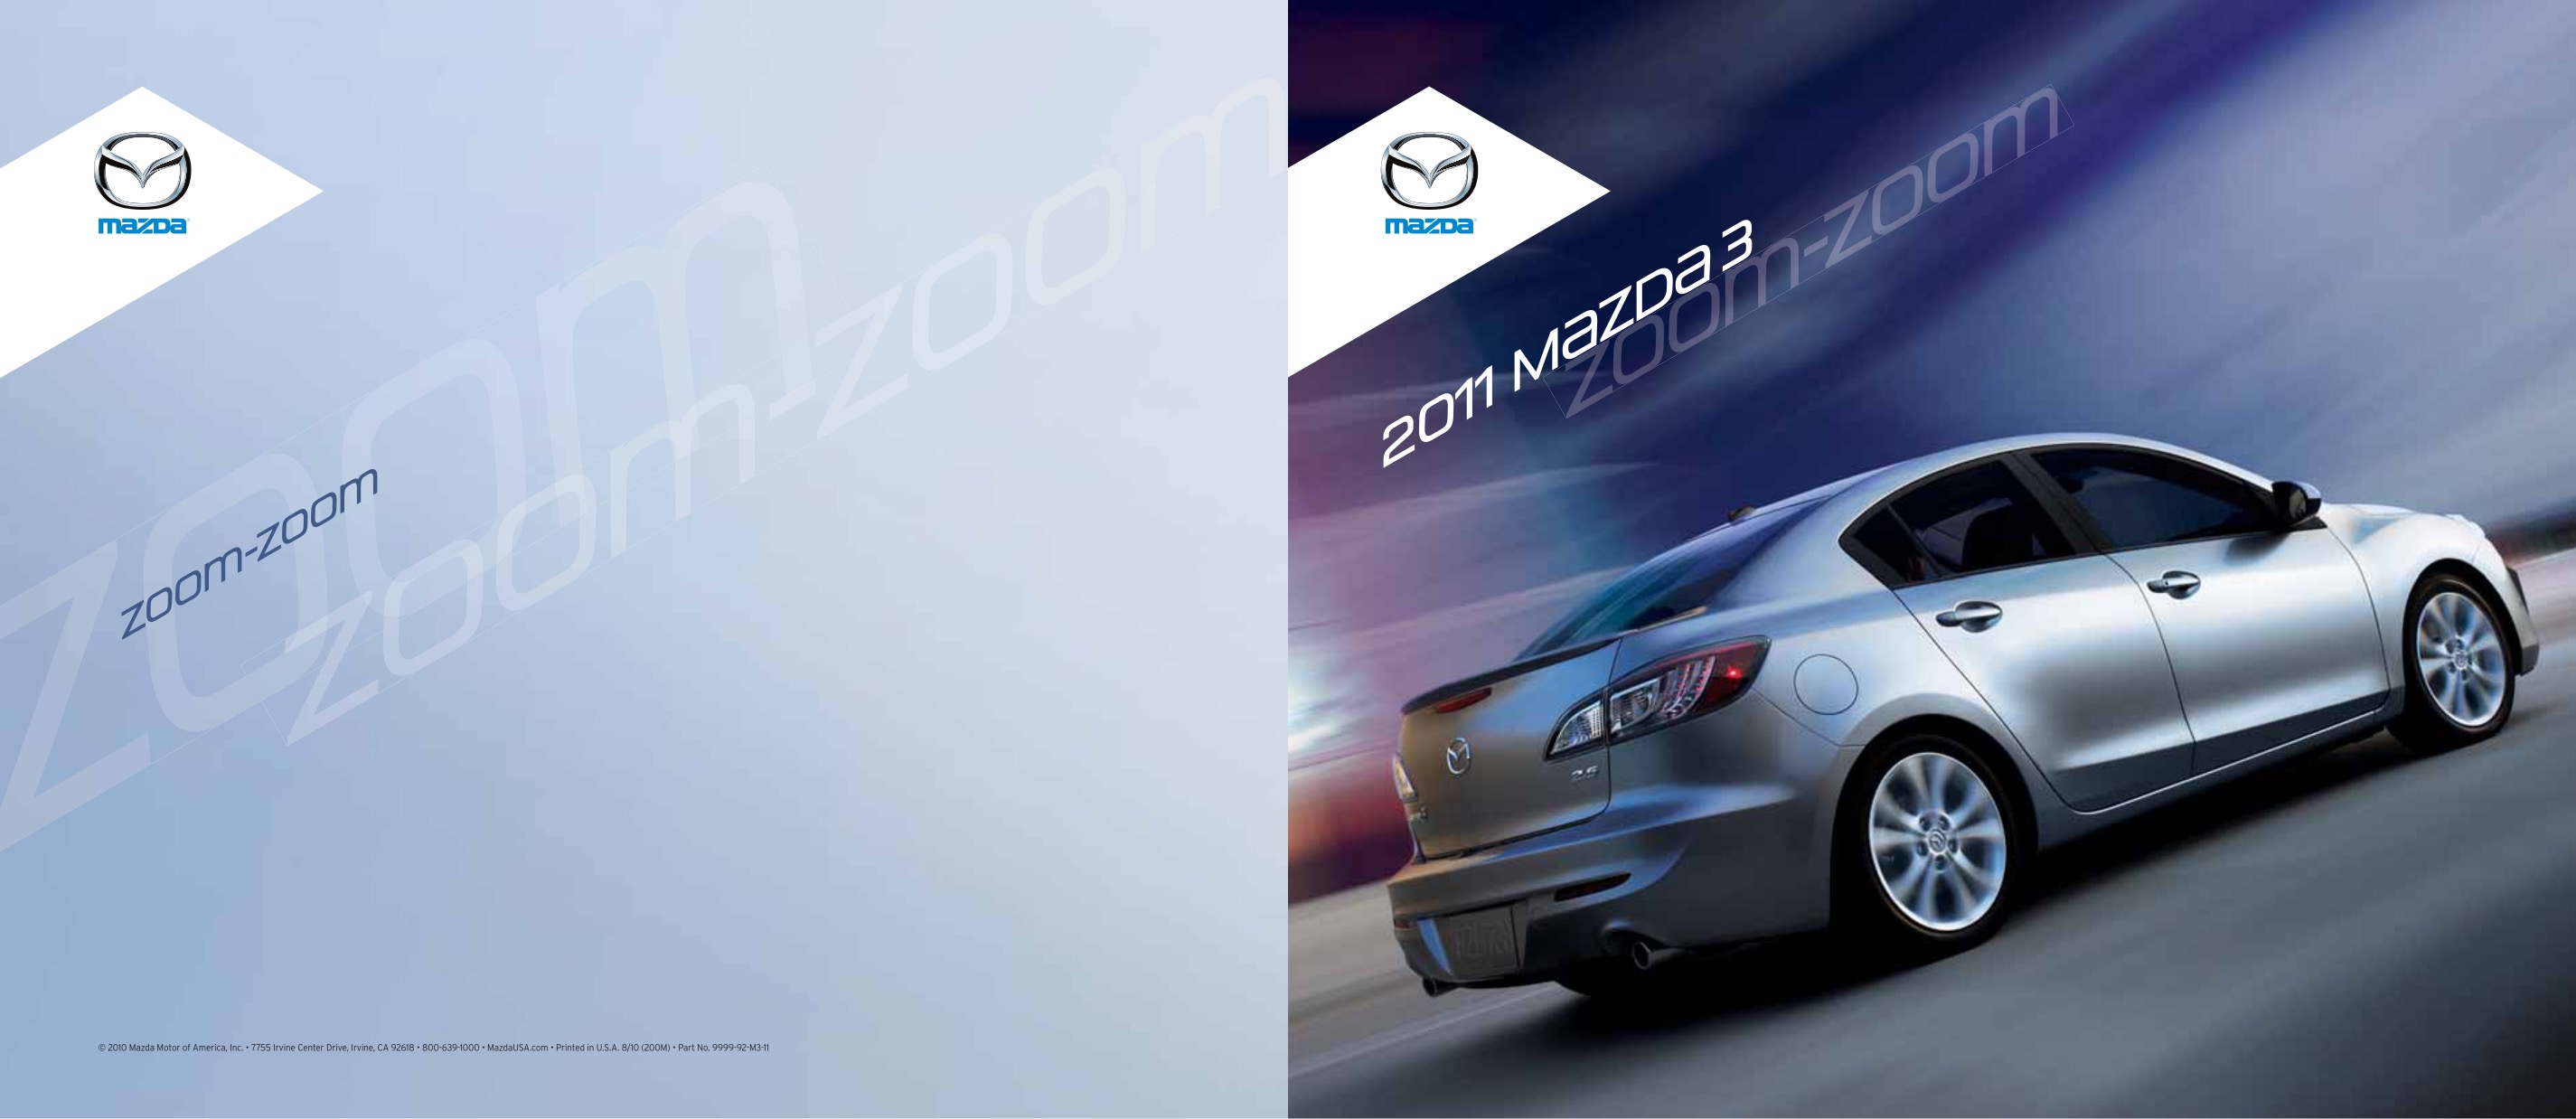 2011 Mazda 3 Brochure